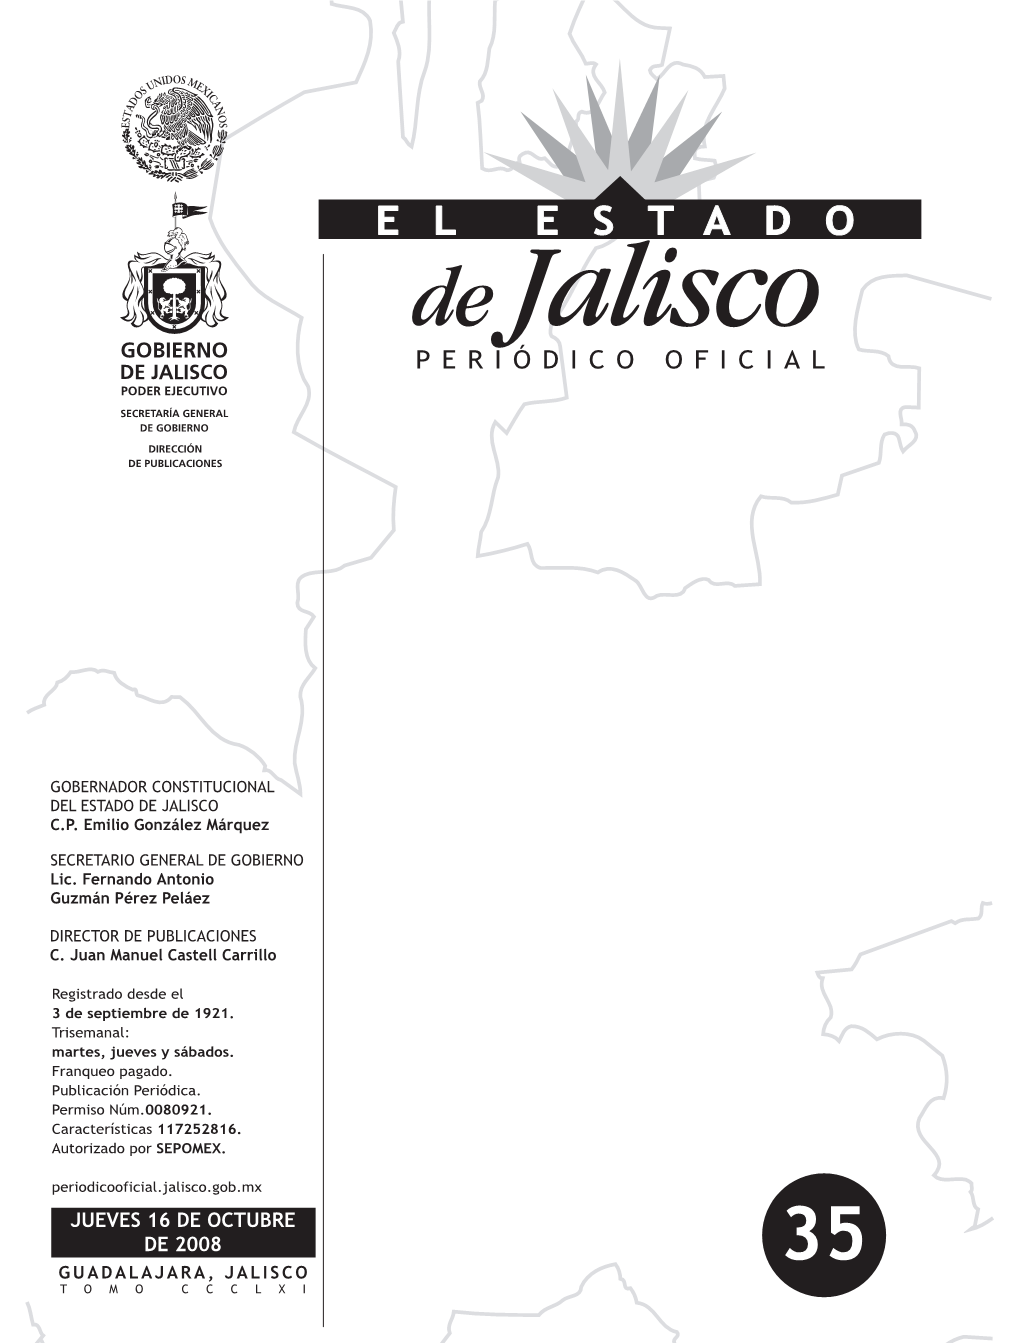 Jueves 16 De Octubre De 2008 35 Guadalajara, Jalisco Tomo Ccclxi Gobernador Constitucional Del Estado De Jalisco C.P